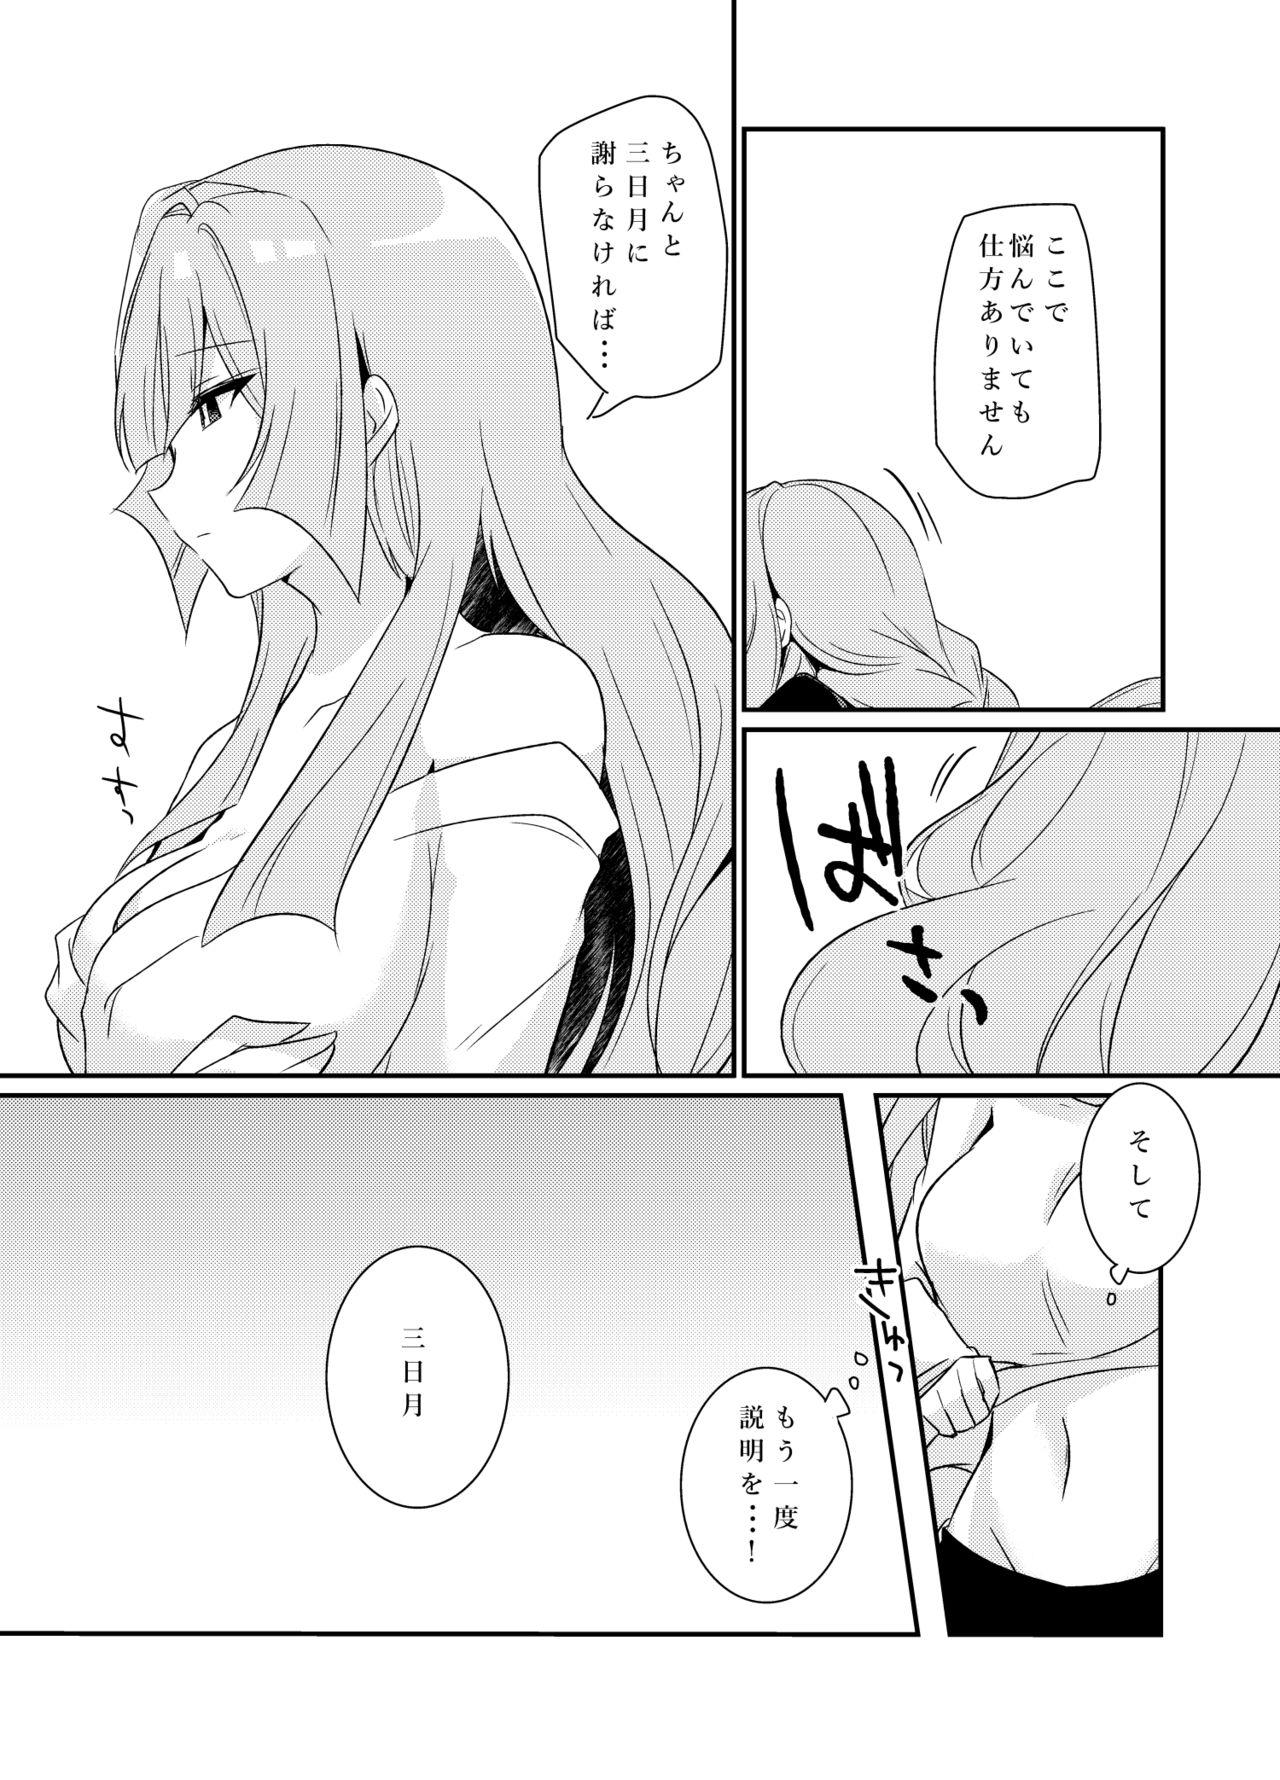 Assfingering MikaKu de Ichaicha Shiteru Manga - Mobile suit gundam tekketsu no orphans Stepson - Page 12